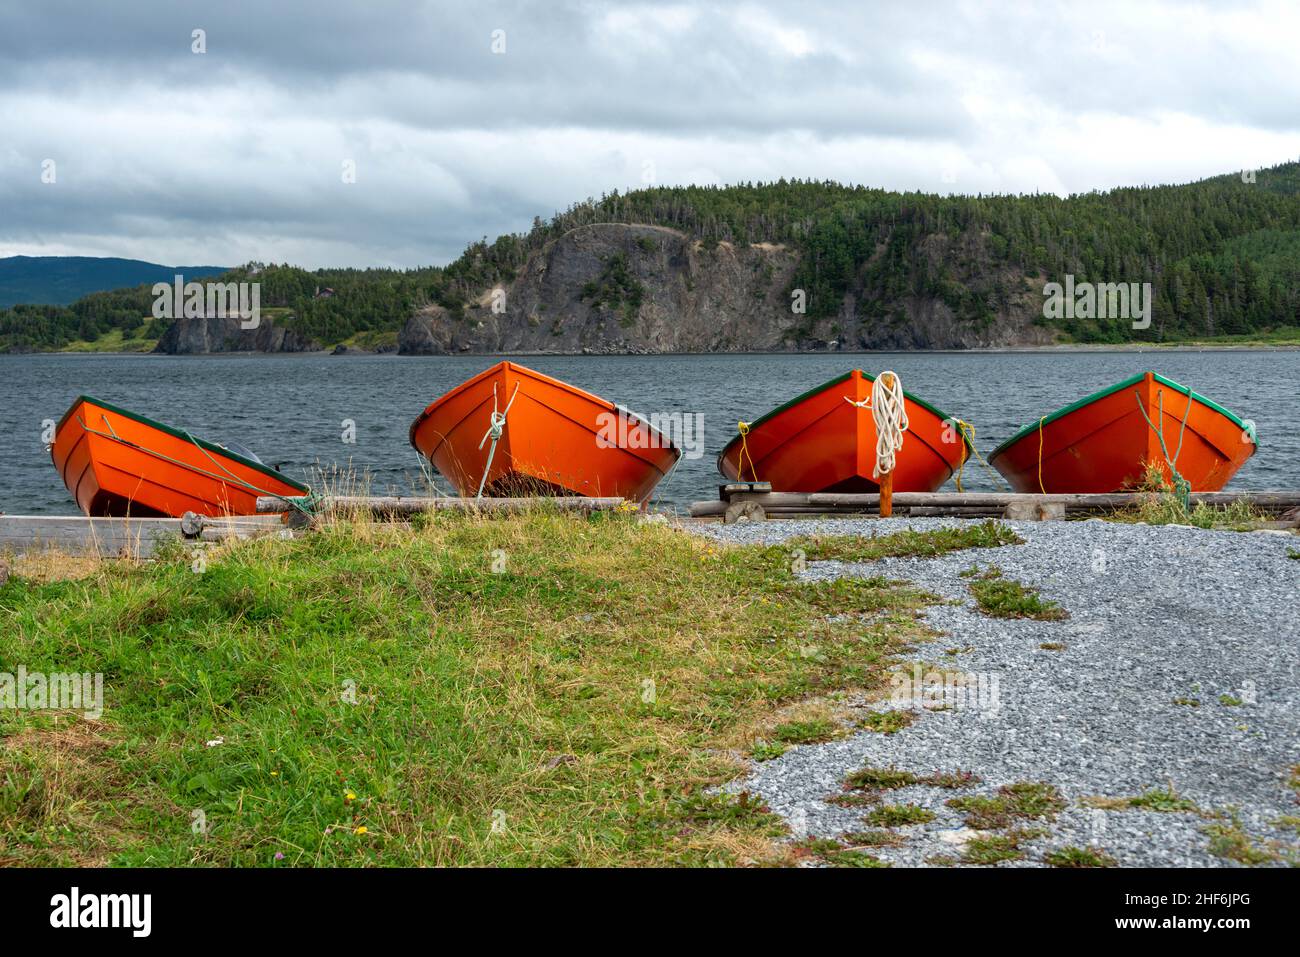 Helle, farbenfrohe, orange und grüne Holzfischereischiffe im traditionellen Stil, Holzboote, am Strand. Es gibt Berge, felsige Küsten, üppiges Grün Stockfoto